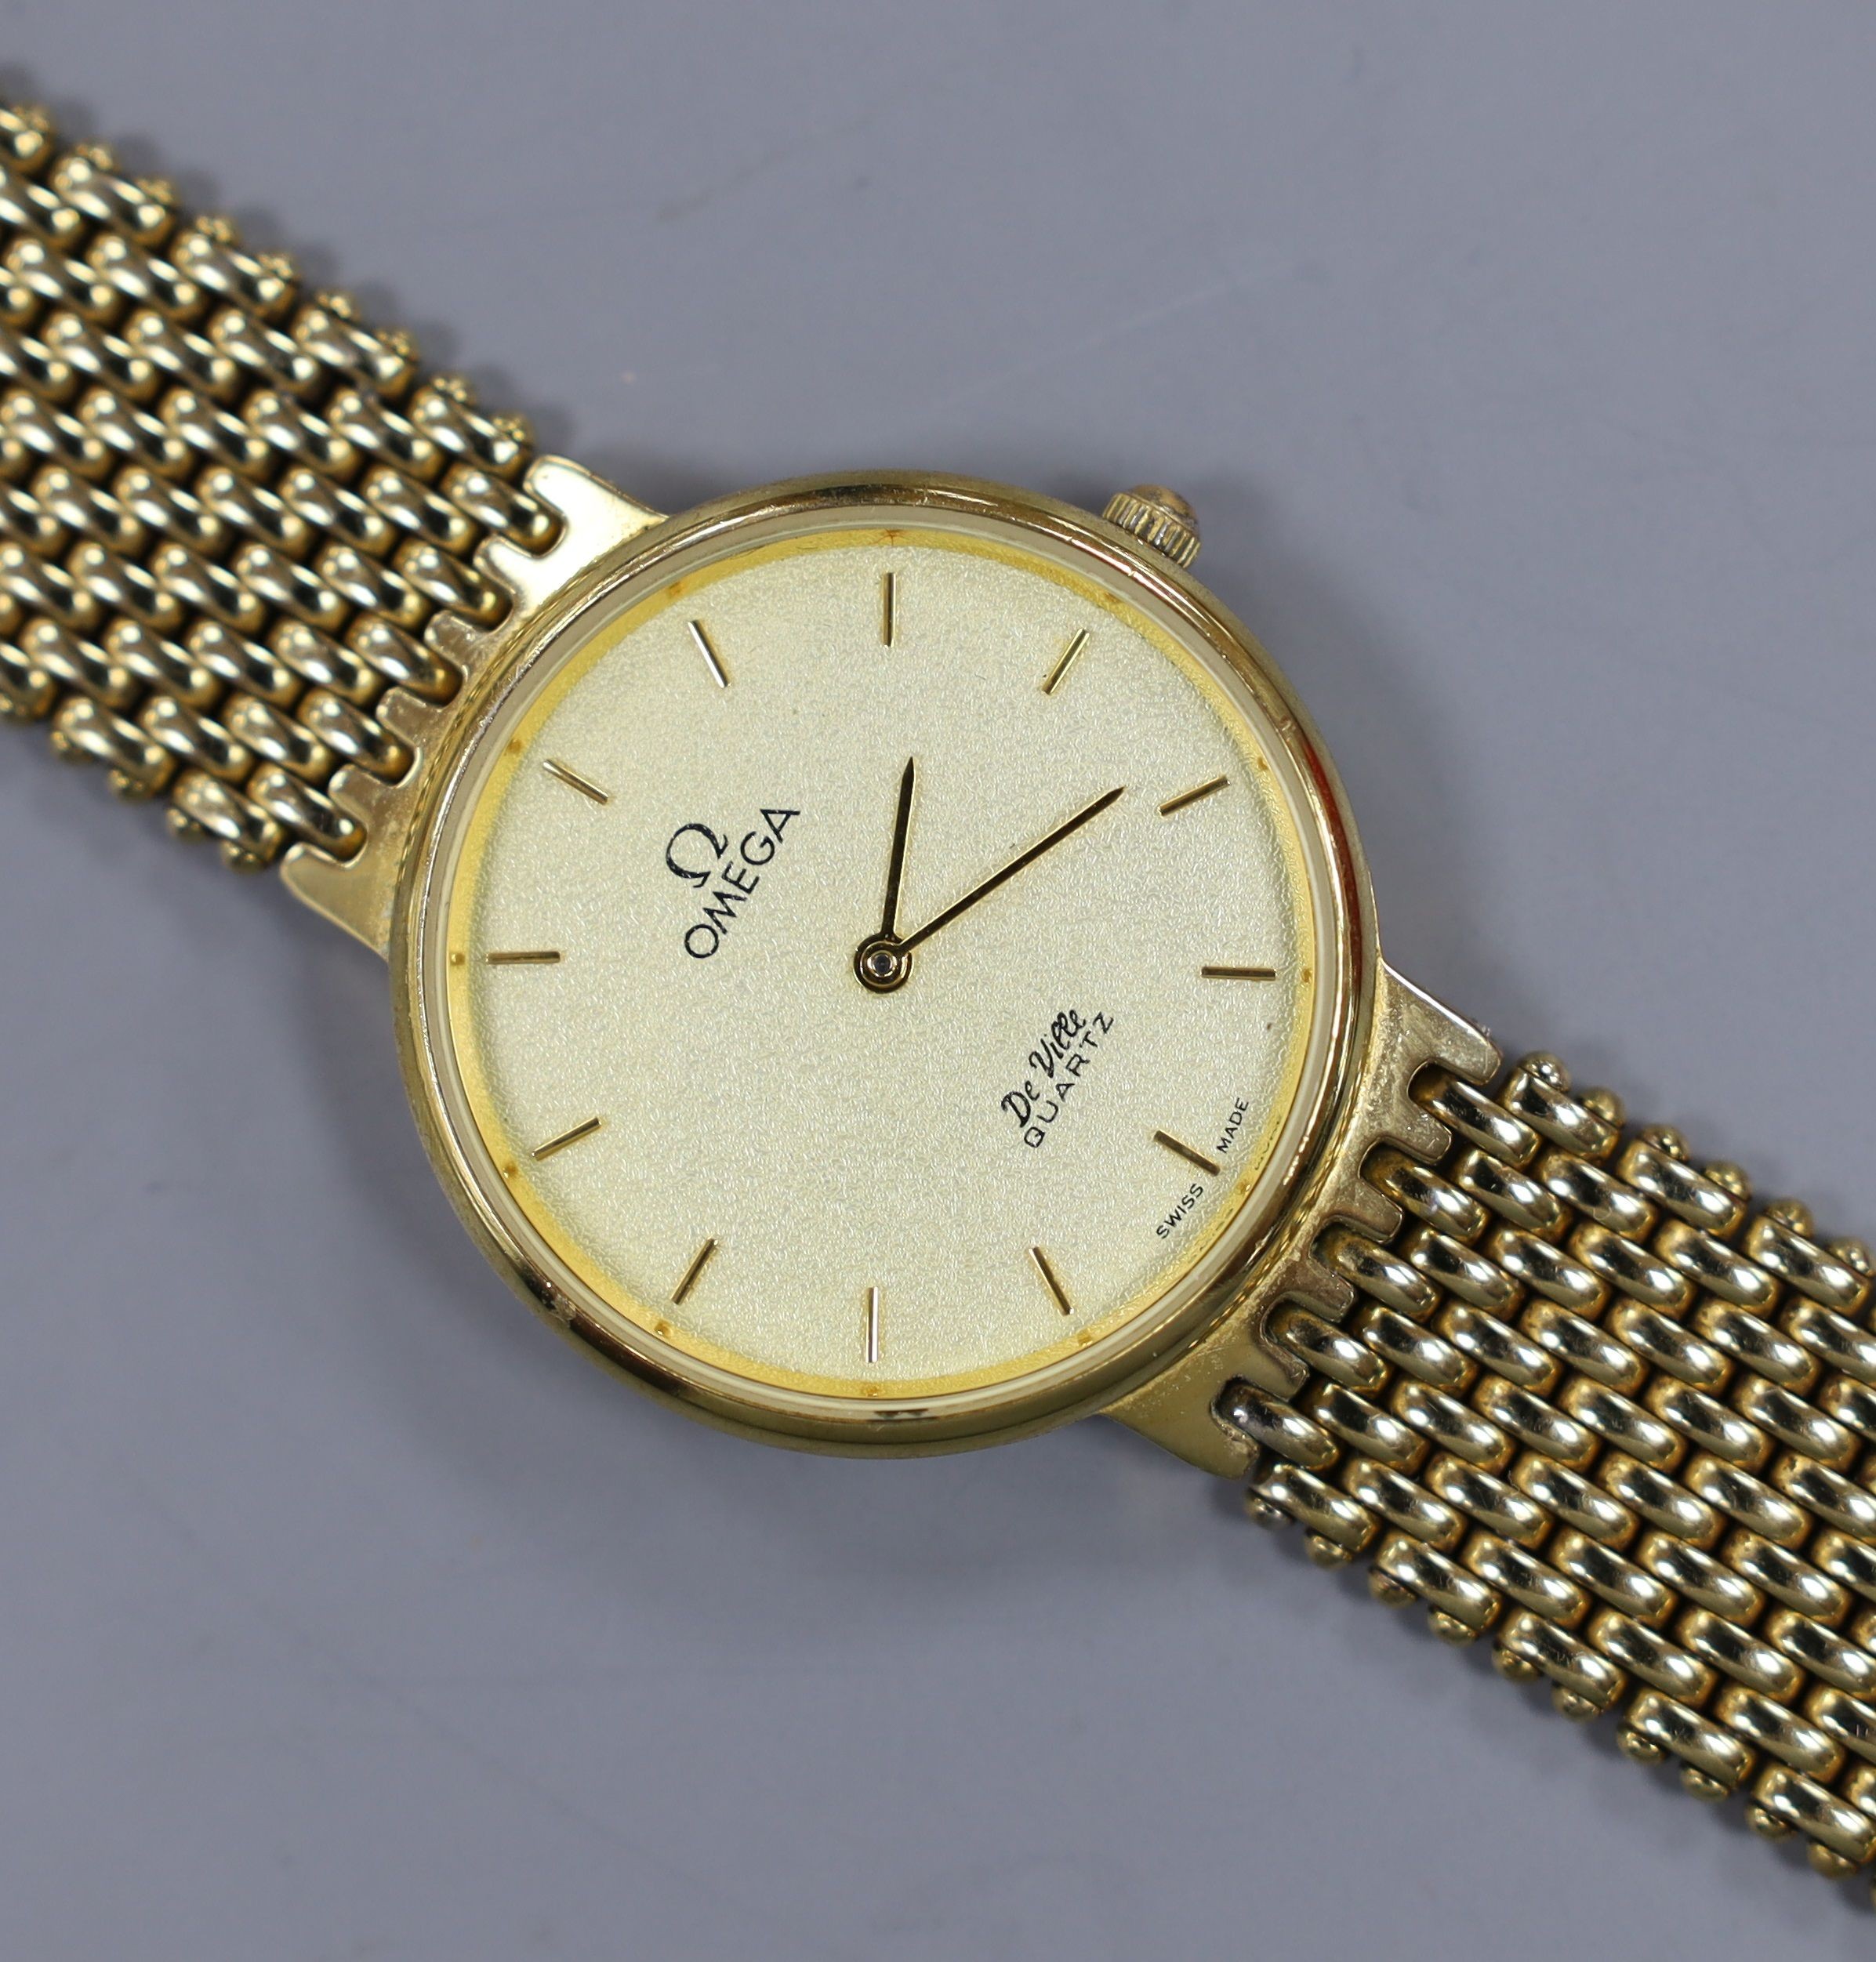 A gentleman's steel and gold plated Omega De Ville quartz wrist watch.